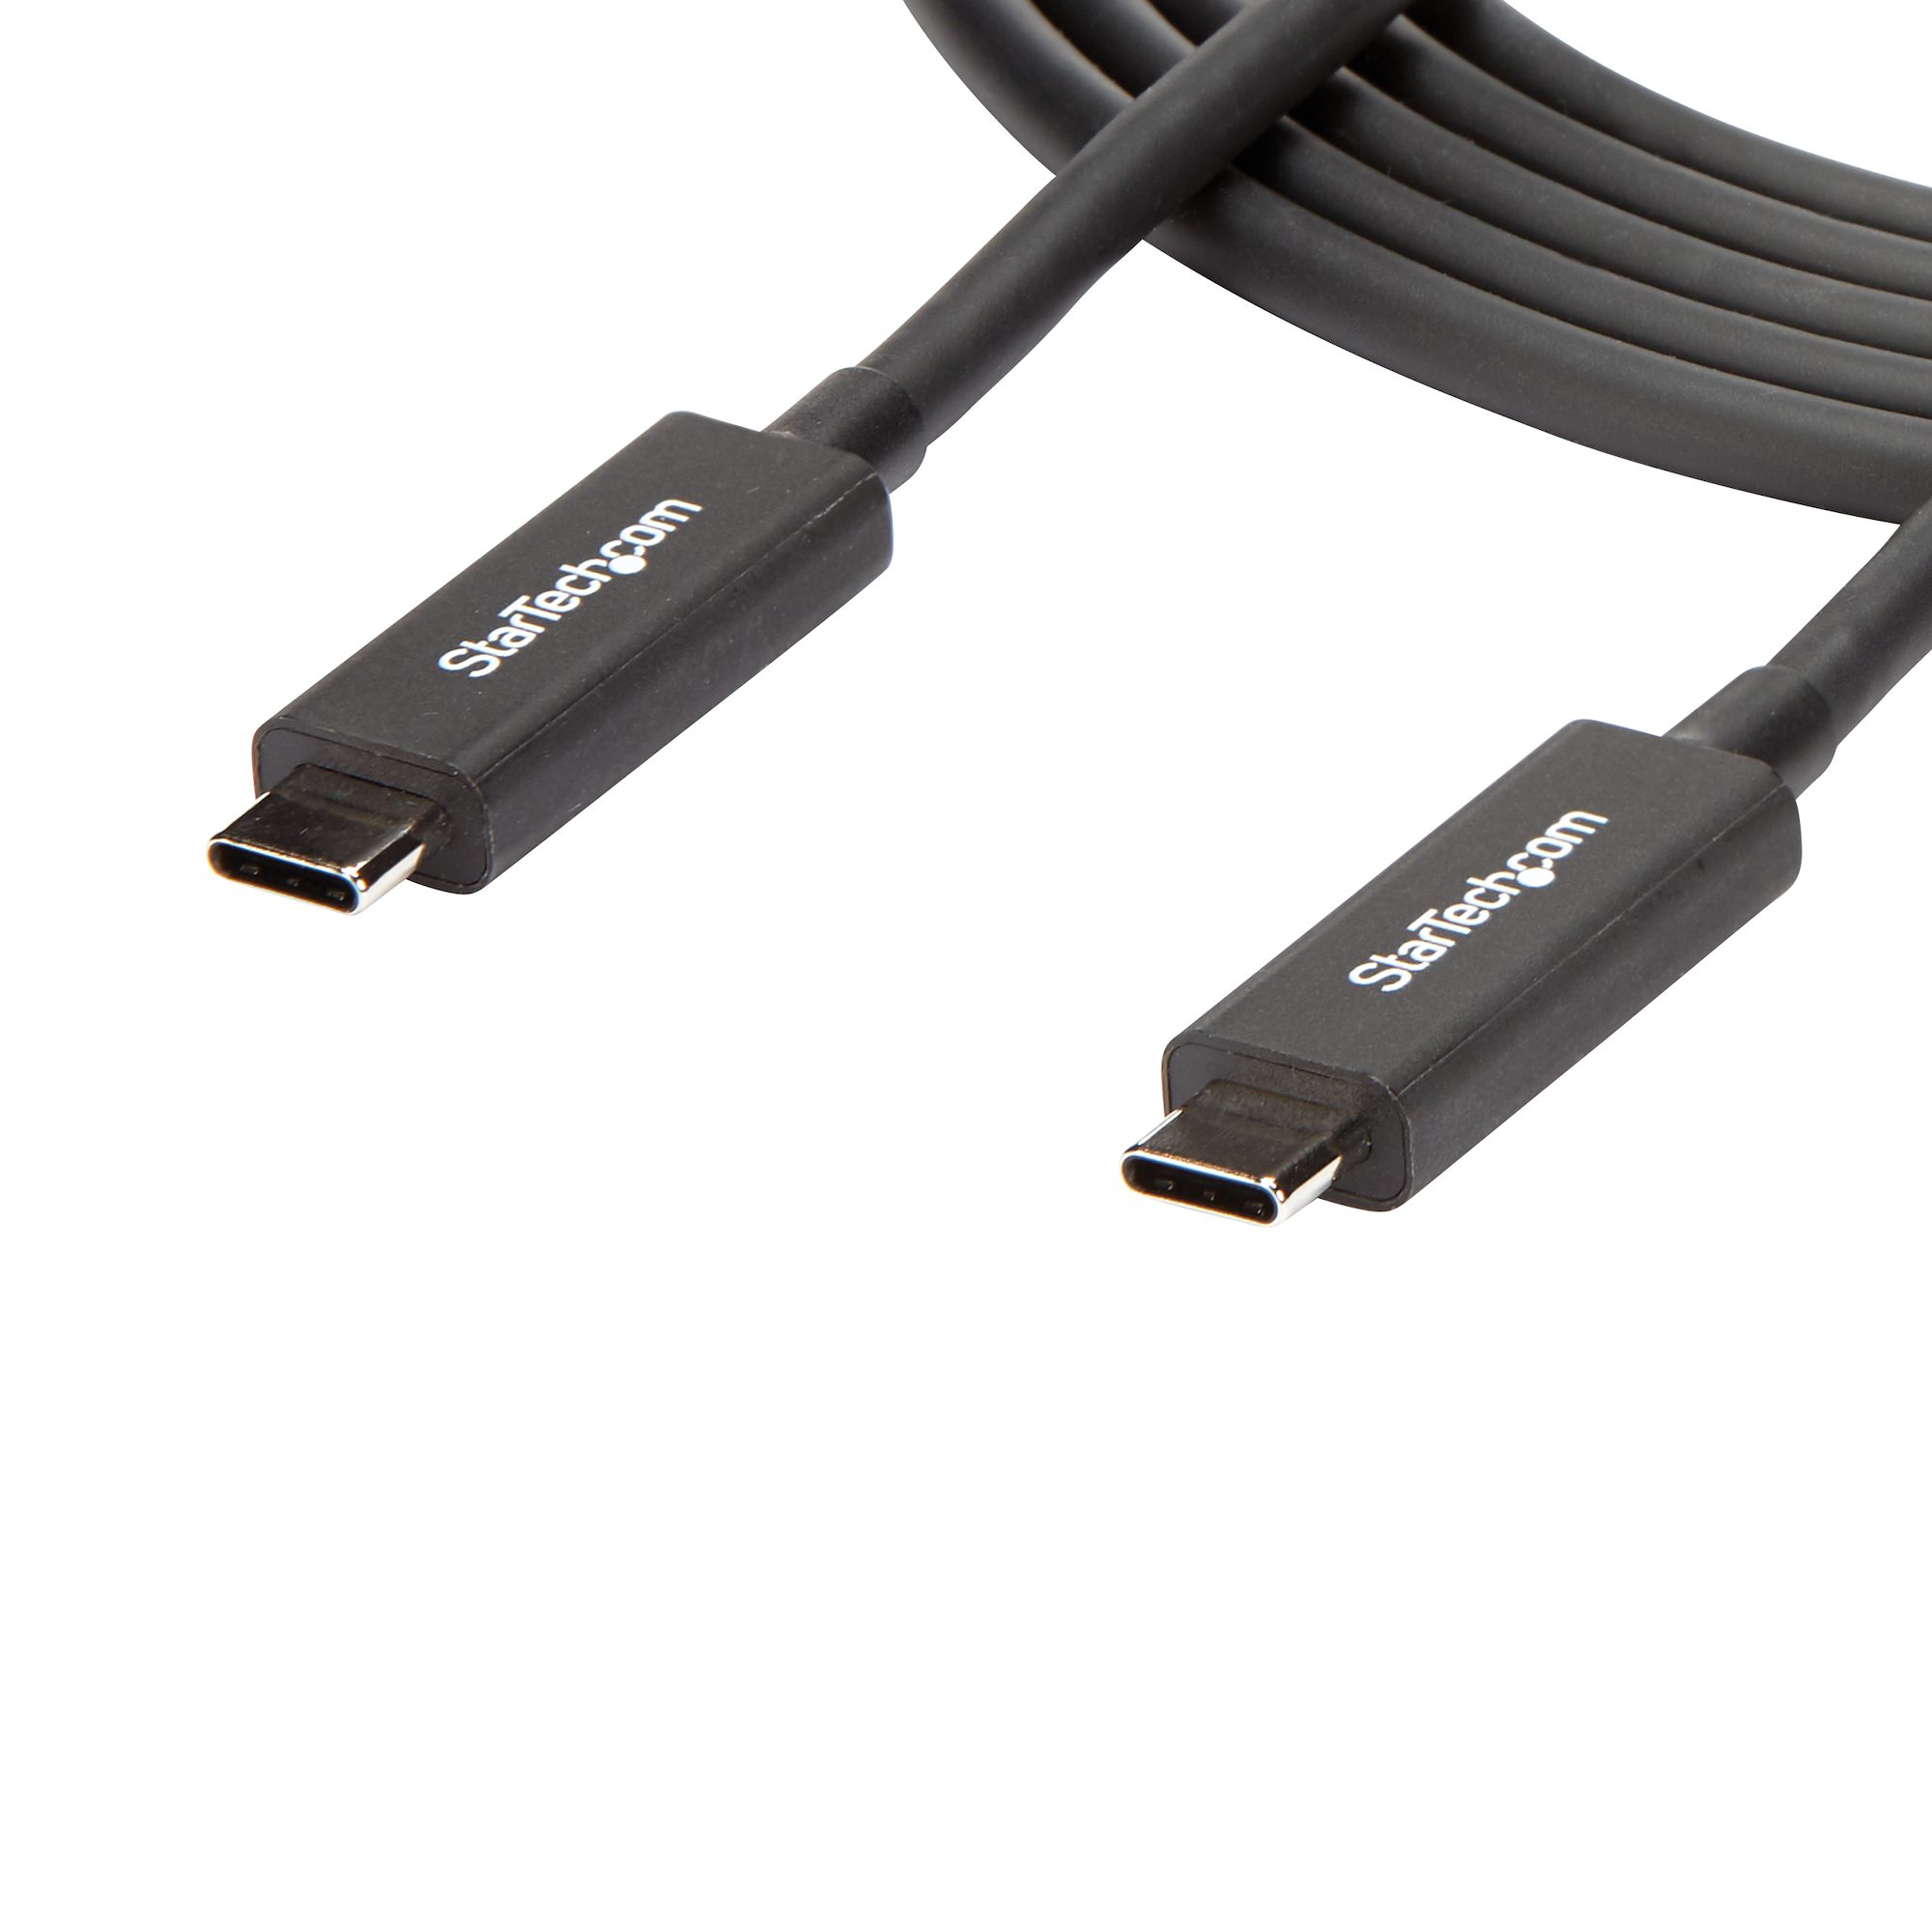 Cable de 2m Thunderbolt 3 USB C 40Gb - Cables y adaptadores Thunderbolt 3